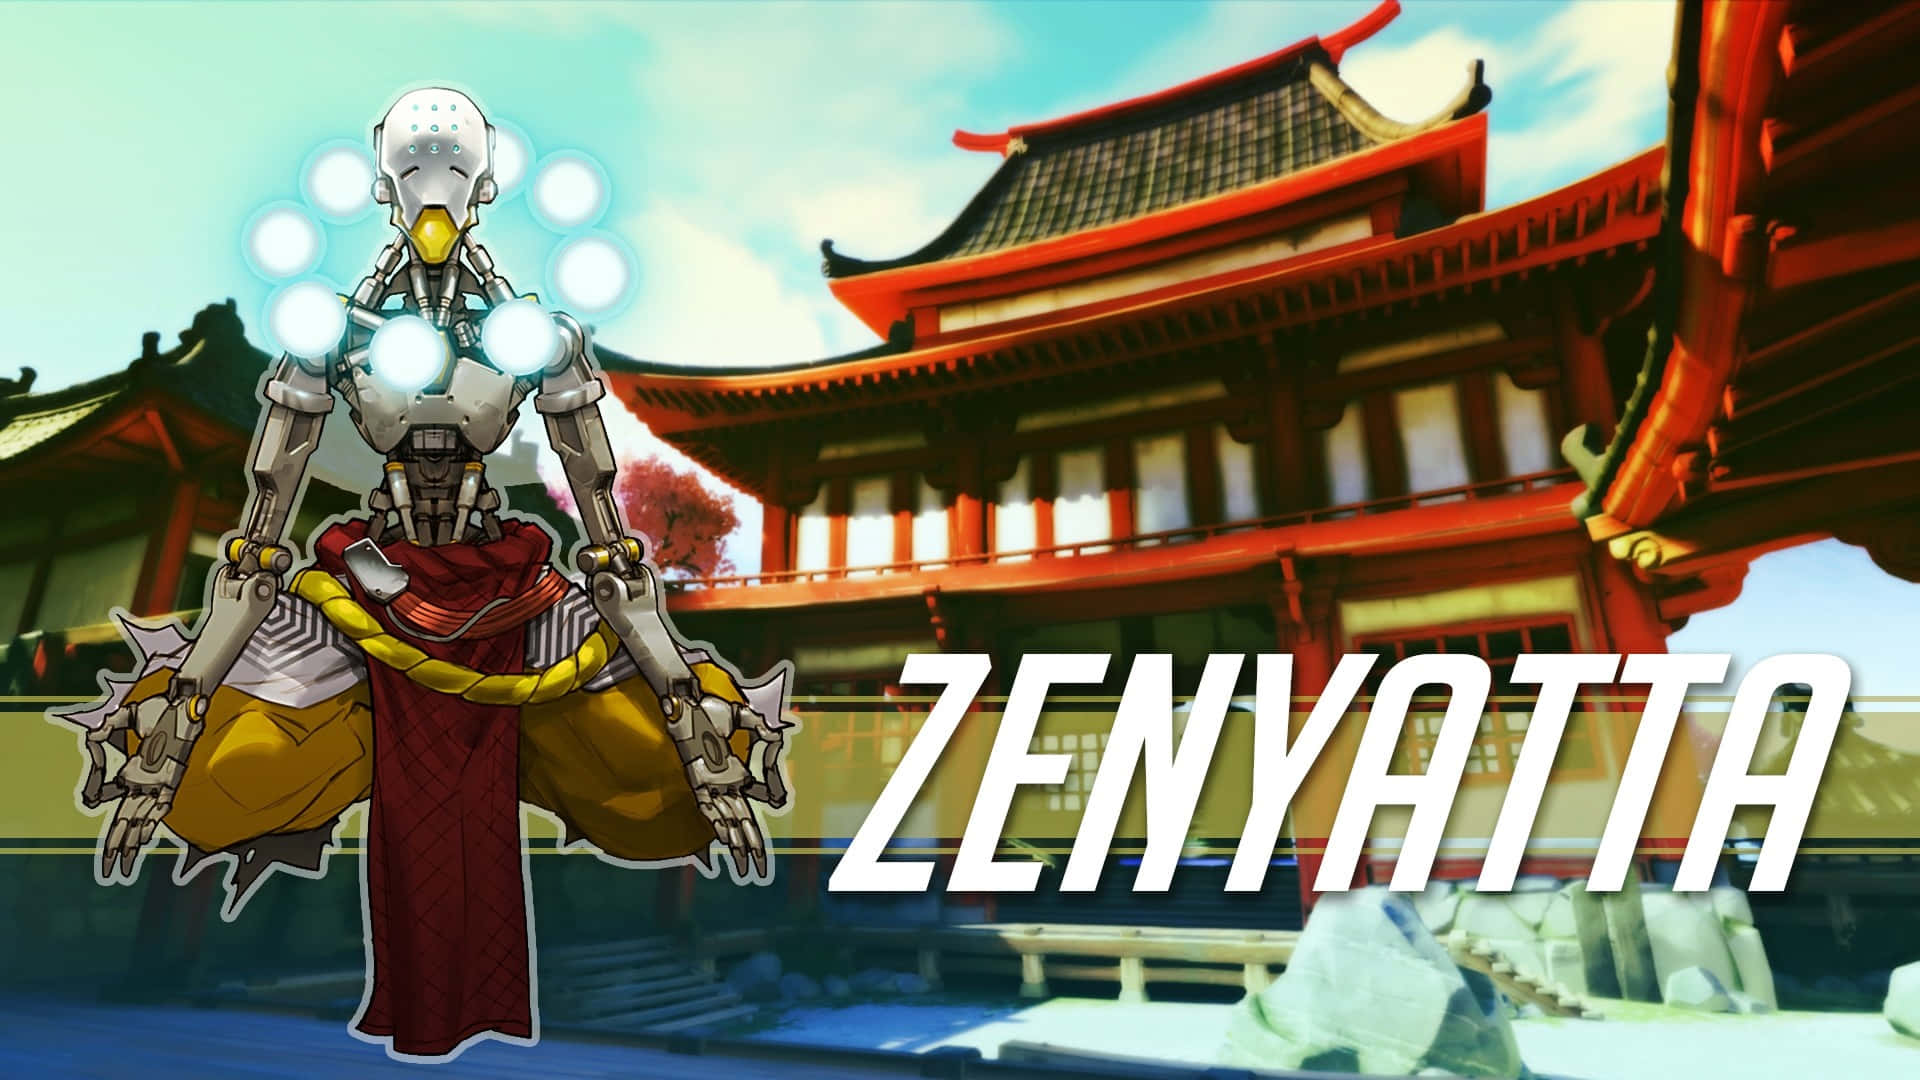 Personajede Zenyatta Con Espada En Construcción. Fondo de pantalla